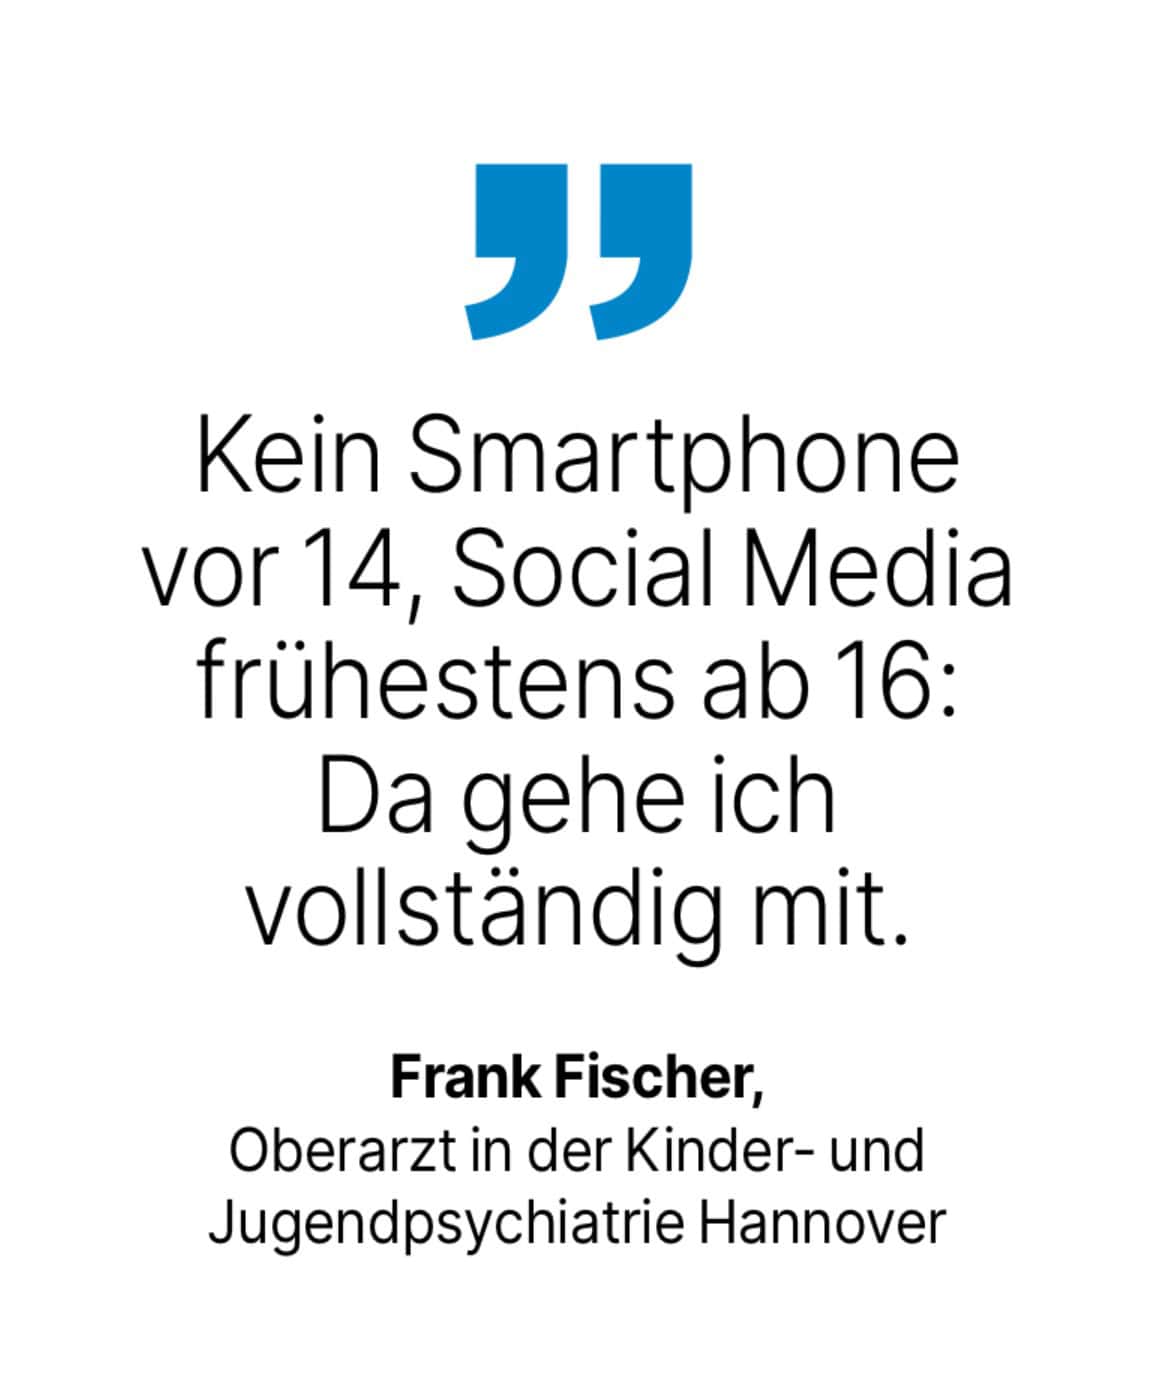 Frank Fischer, Oberarzt in der Kinder- und Jugendpsychiatrie Hannover: Kein Smartphone vor 14, Social Media frühestens ab 16:
Da gehe ich vollständig mit.